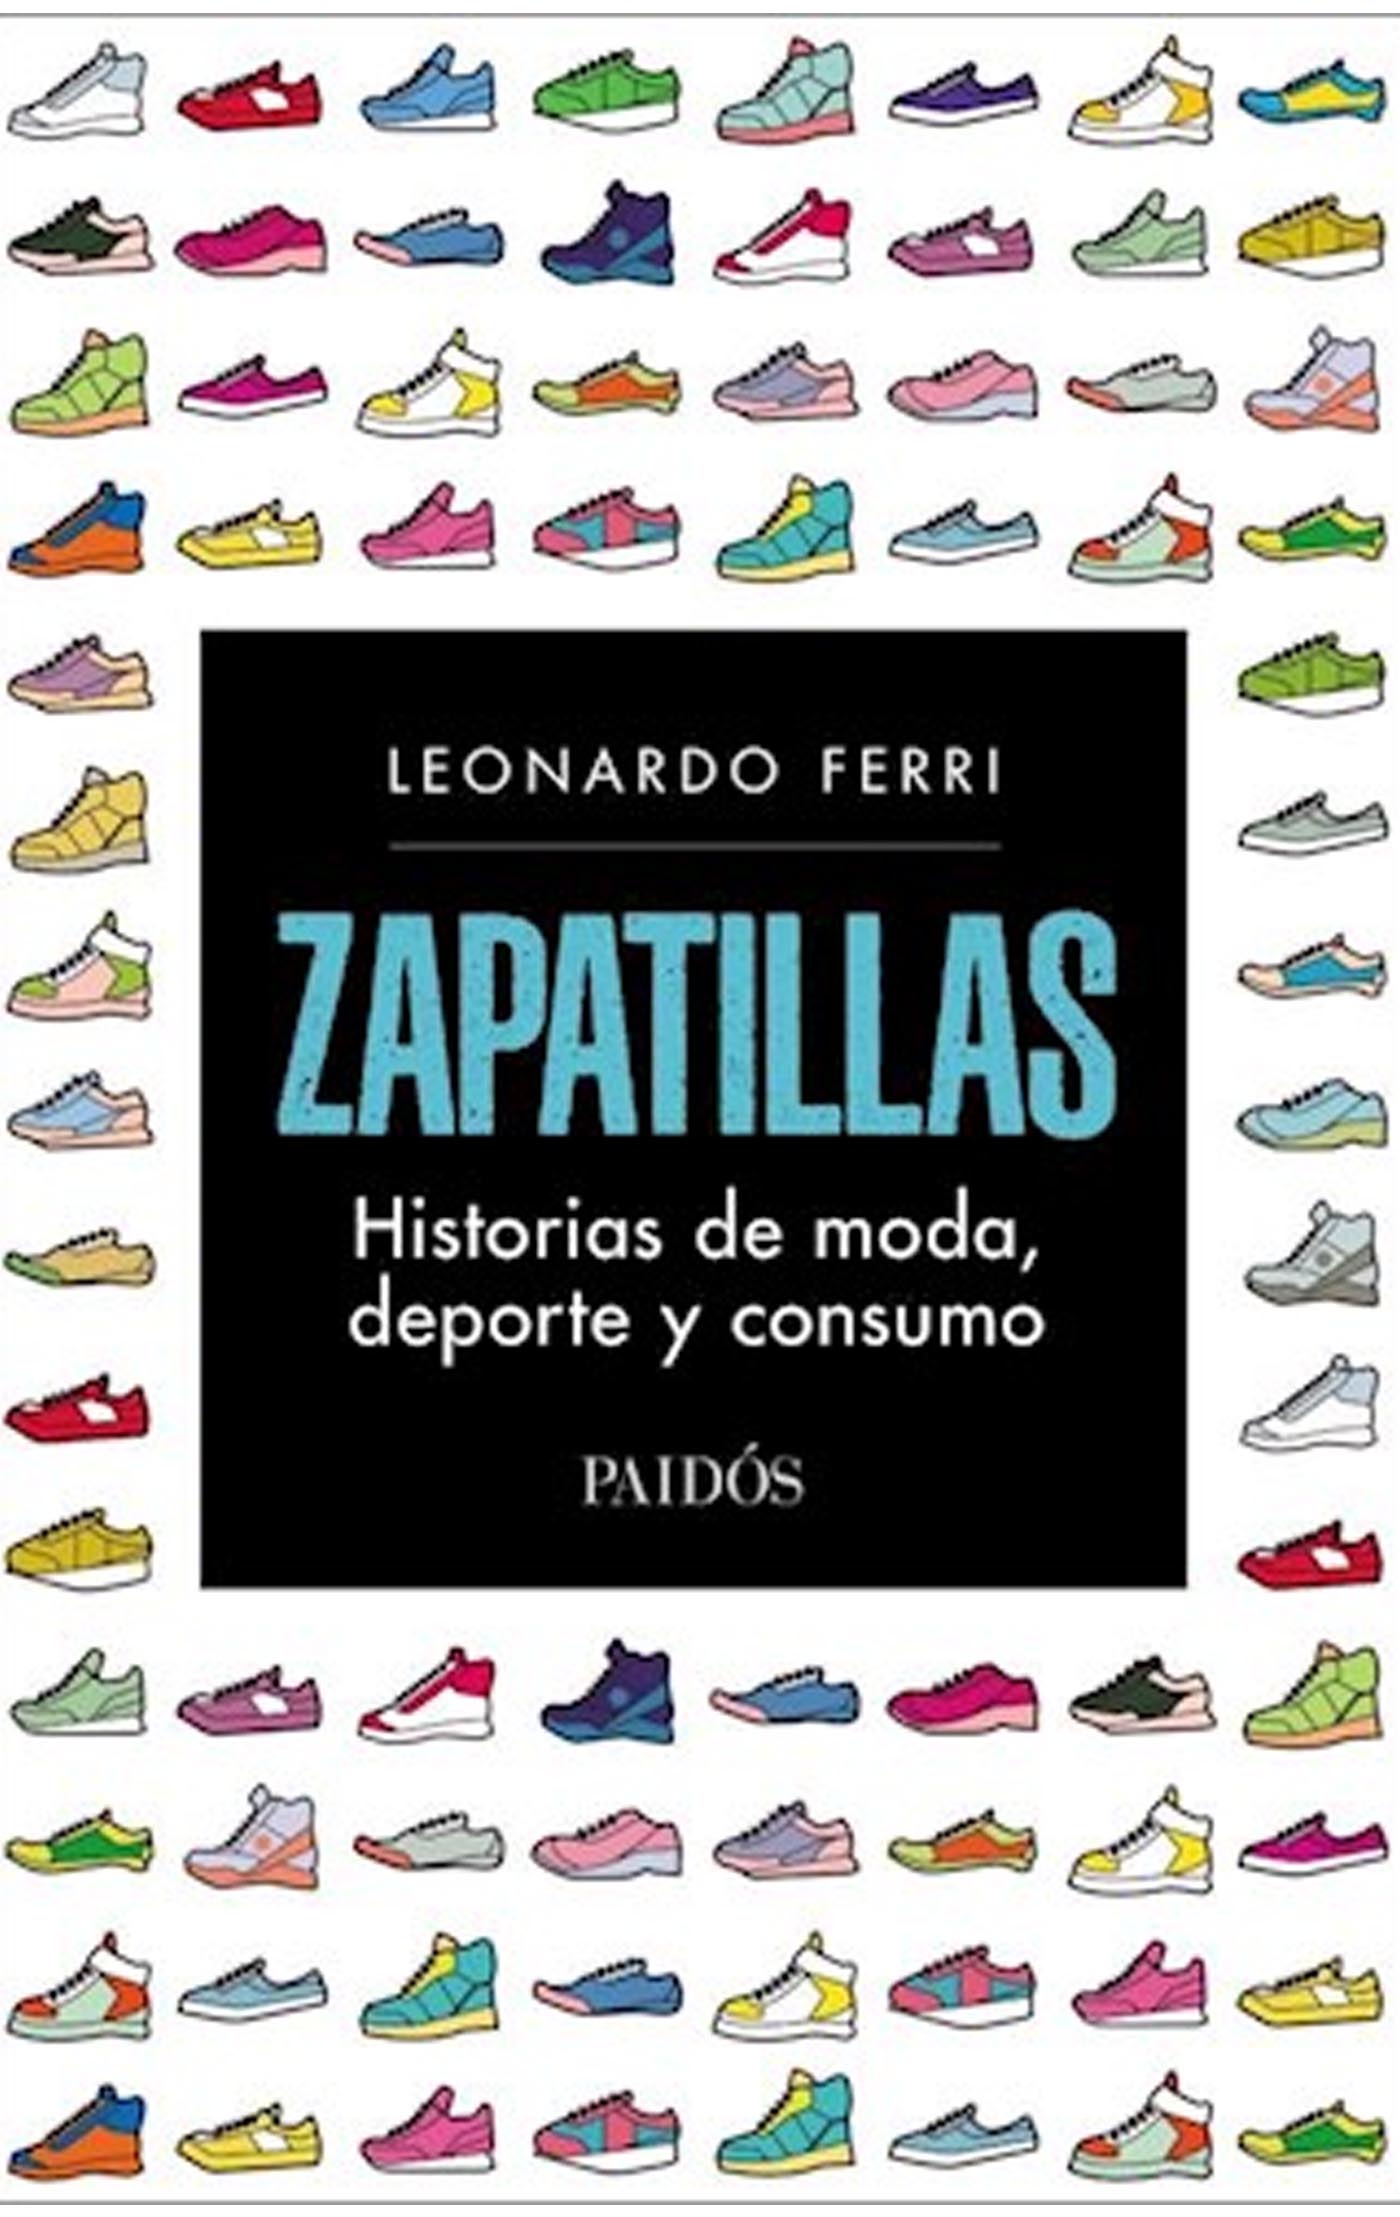 Zapatillas Historias de moda, deporte y consumo Leoonardo Ferri